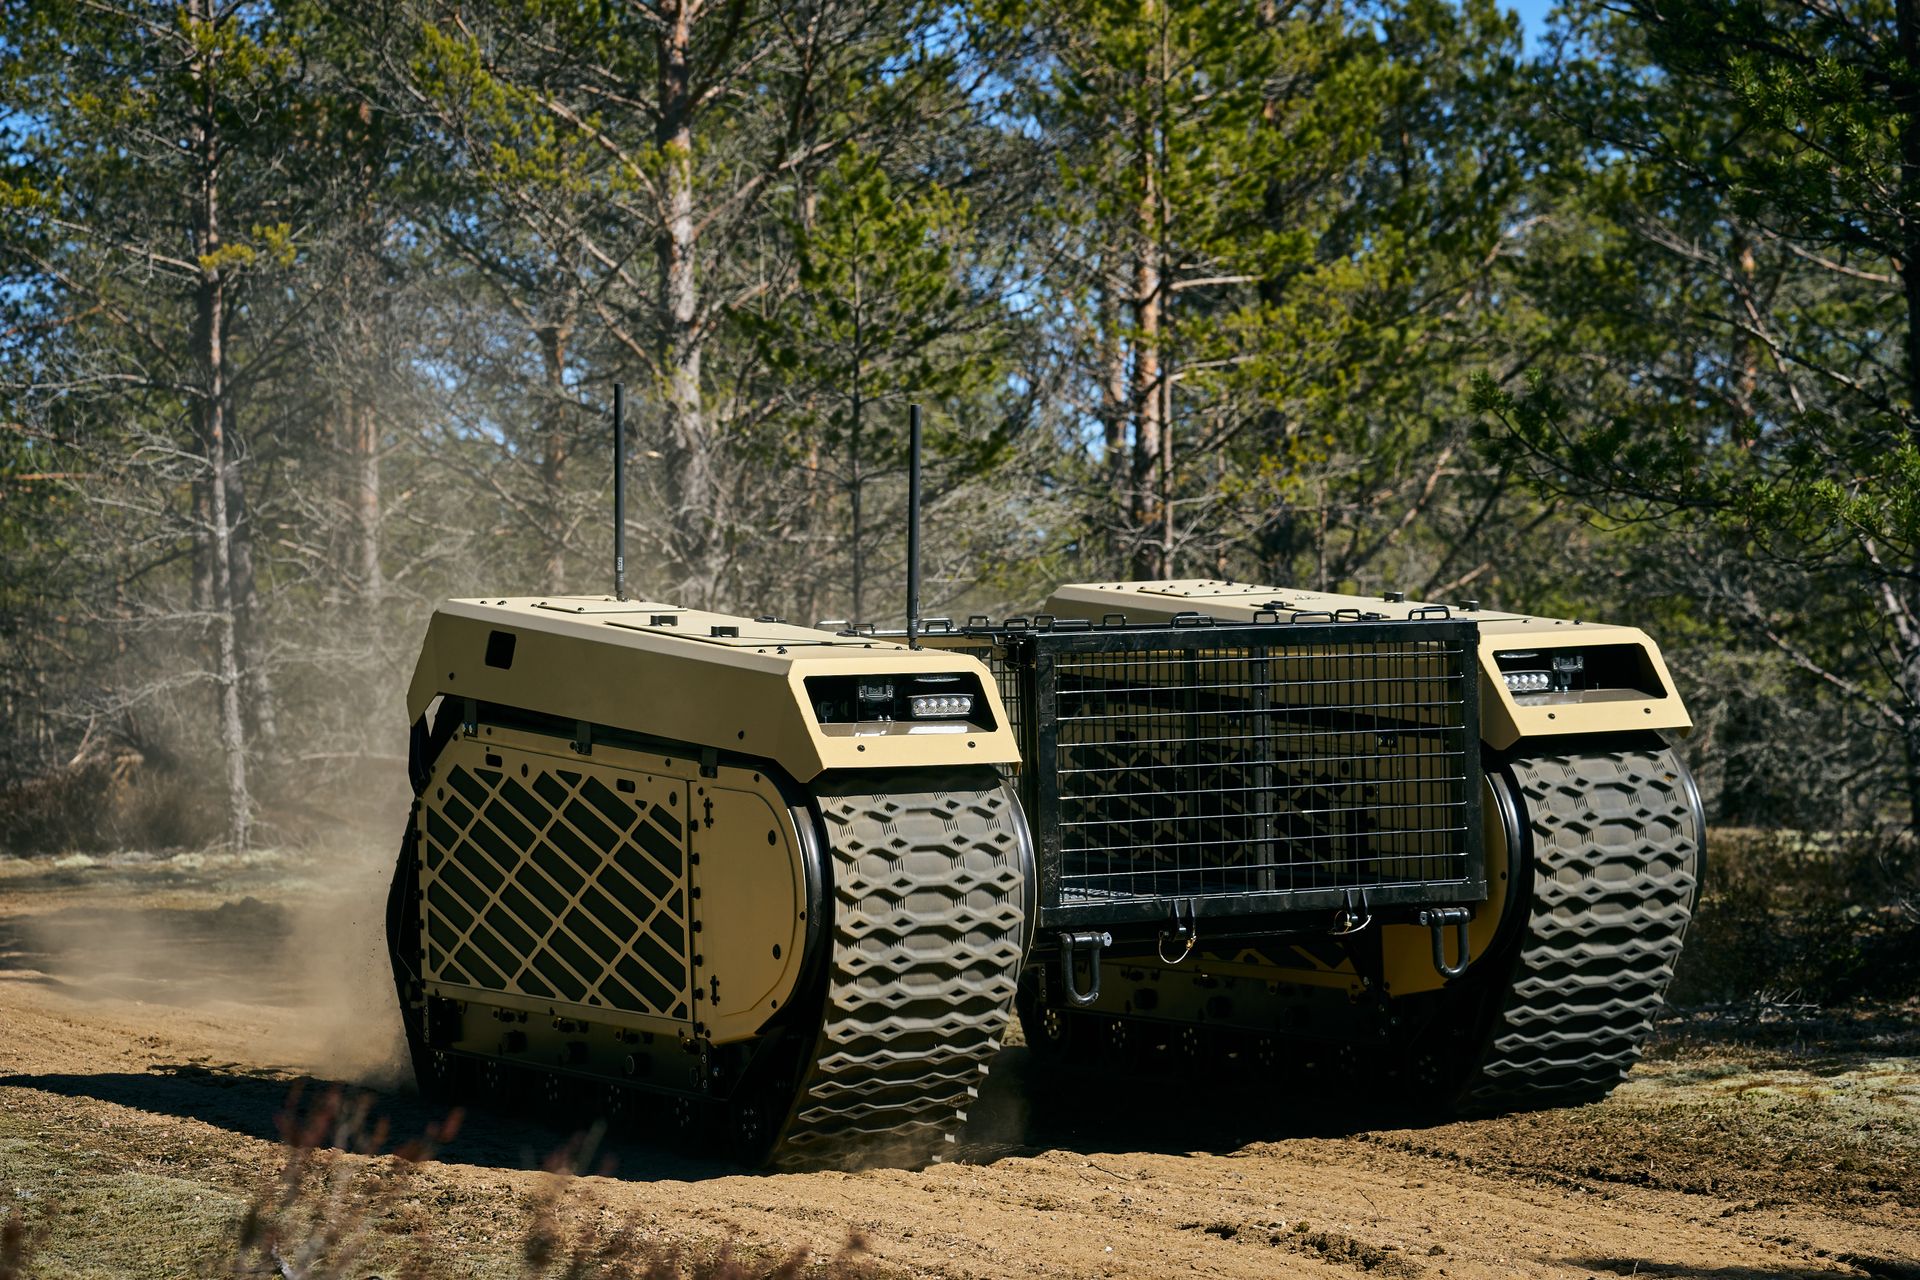 Peta generacija UGV tenkova Themis kompanije Milrem Robotics opisana je kao "višenamjensko gusjenično vozilo", koje može biti opremljeno raznim tehnologijama za borbu kao što su sistemi oružja, privezani dronovi i IED uređaji za detekciju